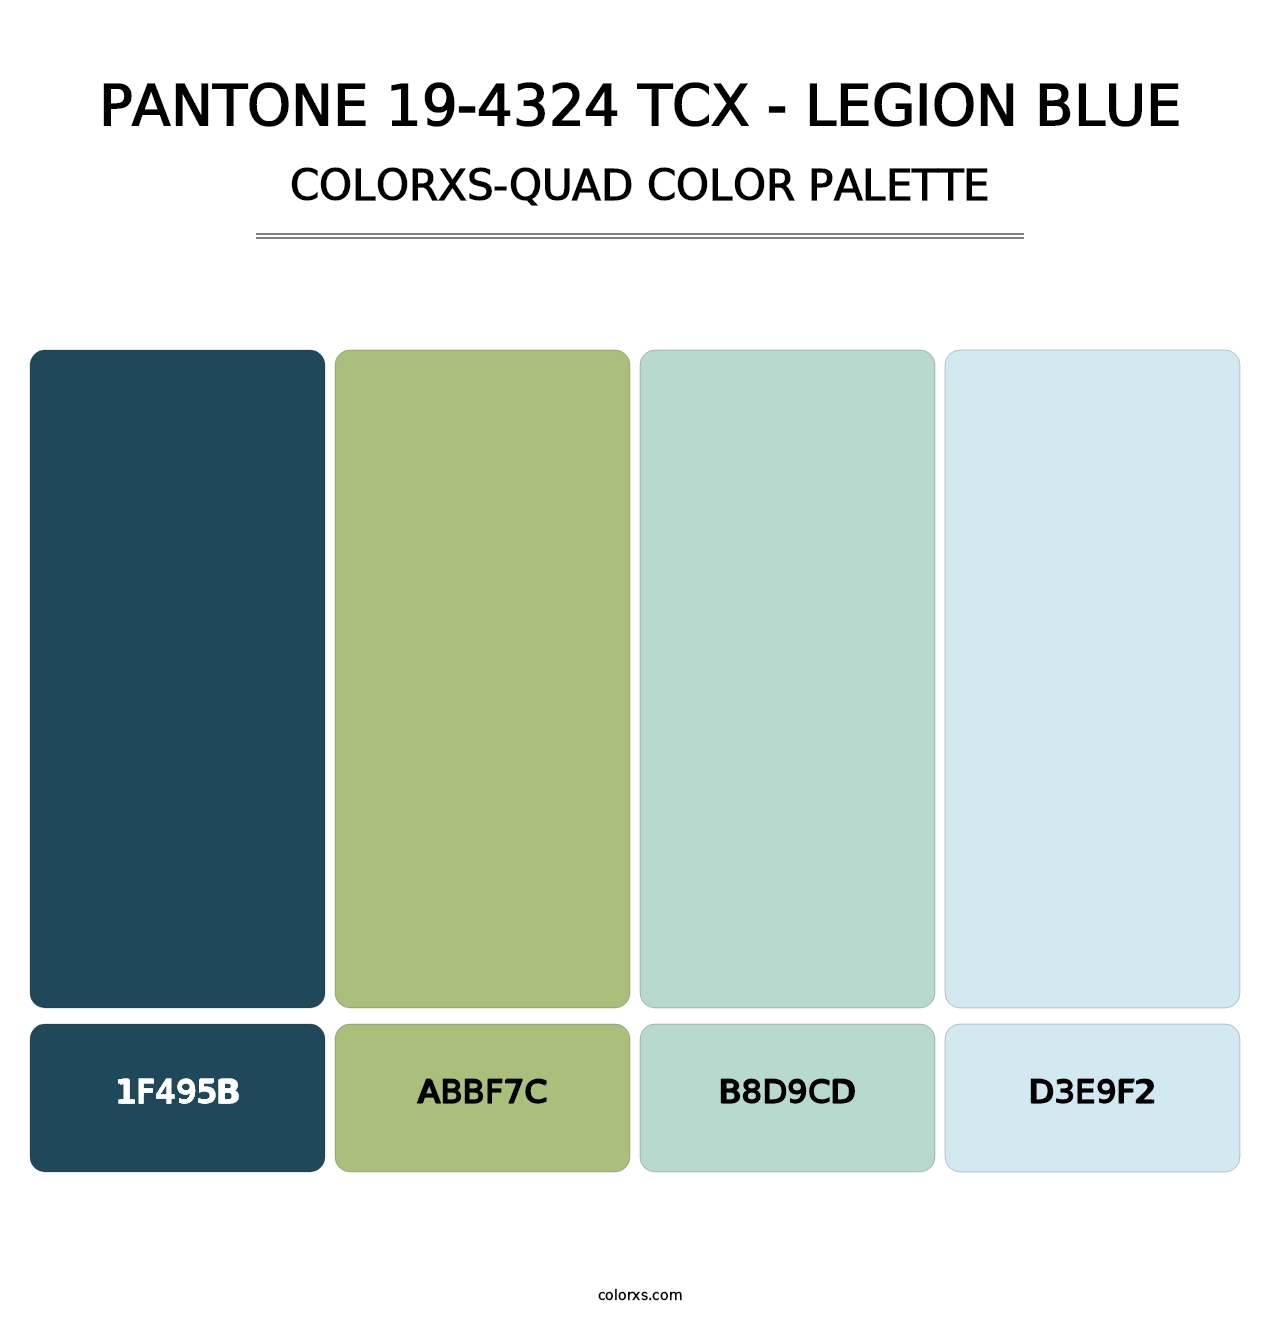 PANTONE 19-4324 TCX - Legion Blue - Colorxs Quad Palette